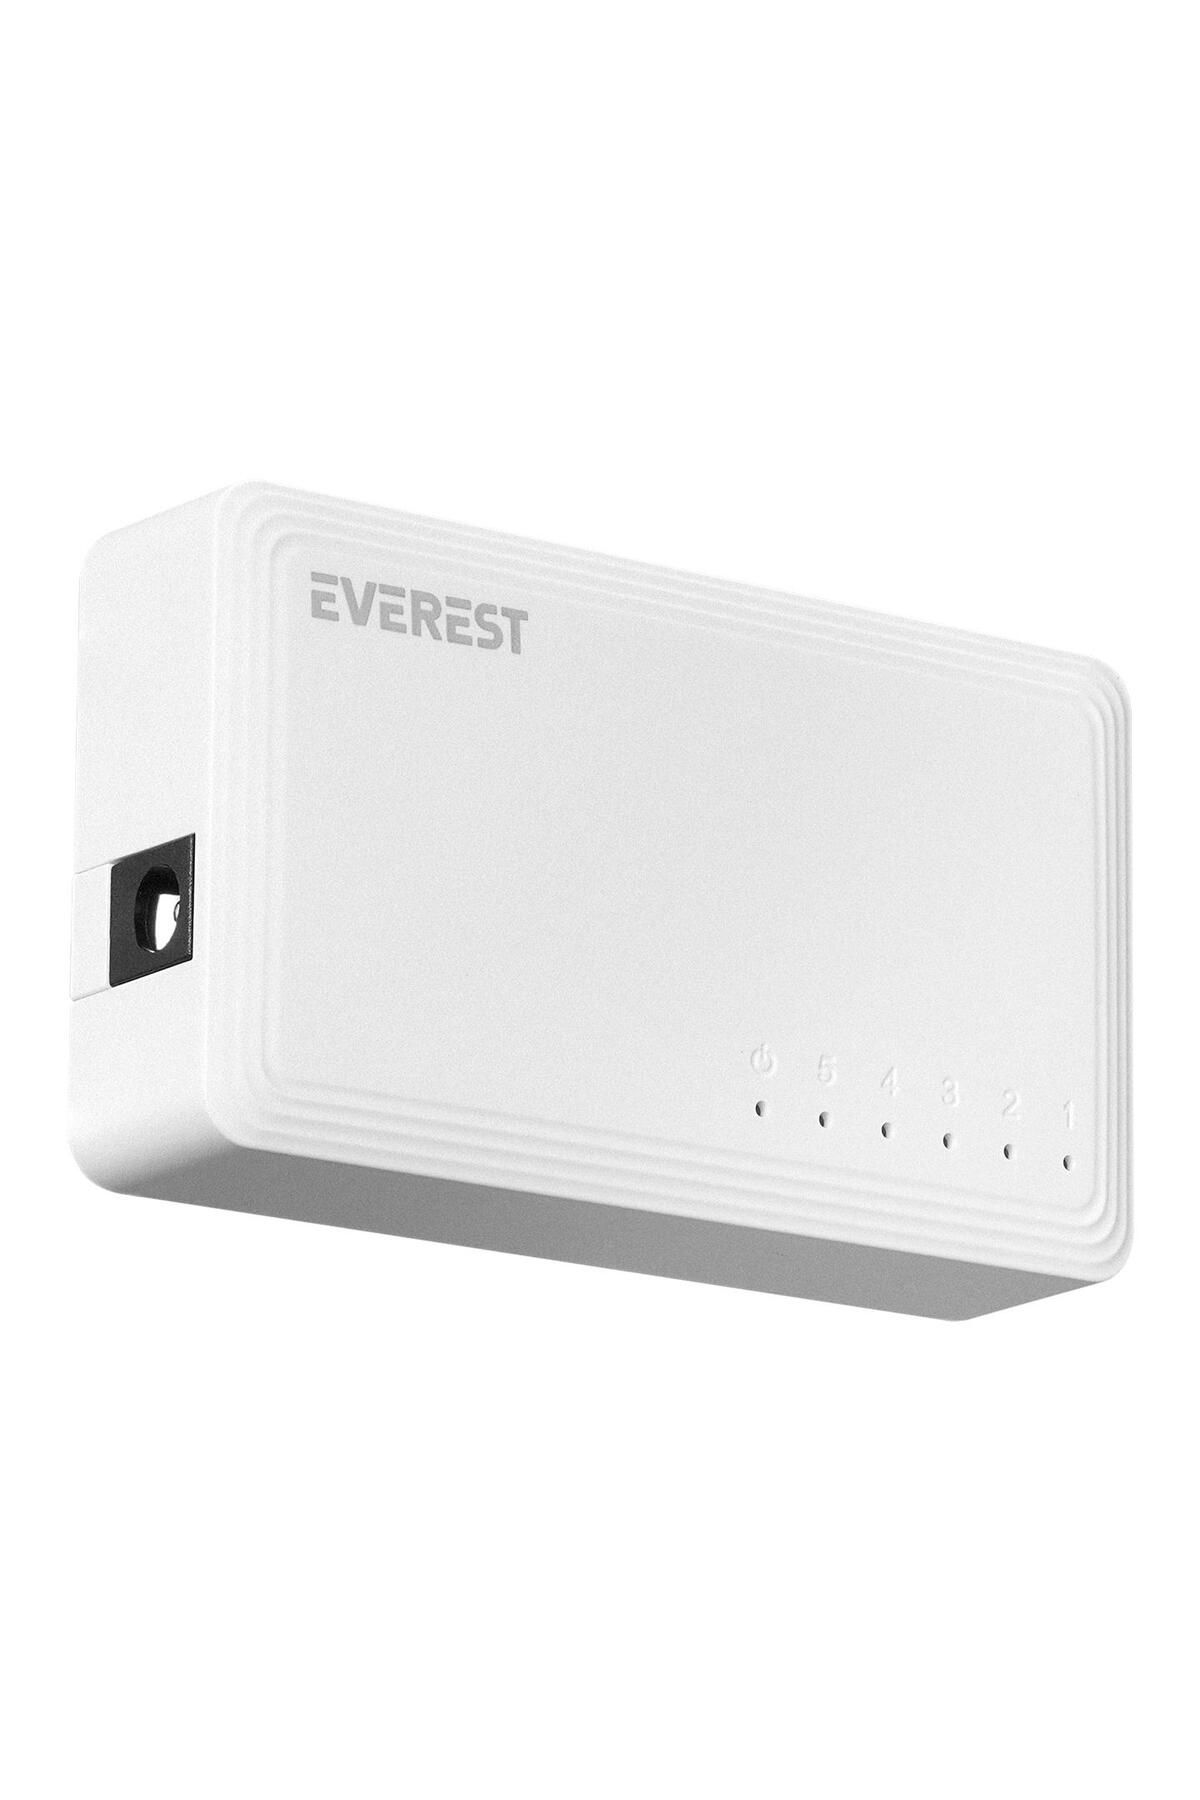 Everest 5port Esw-515g Gigabit Yönetilemez Switch